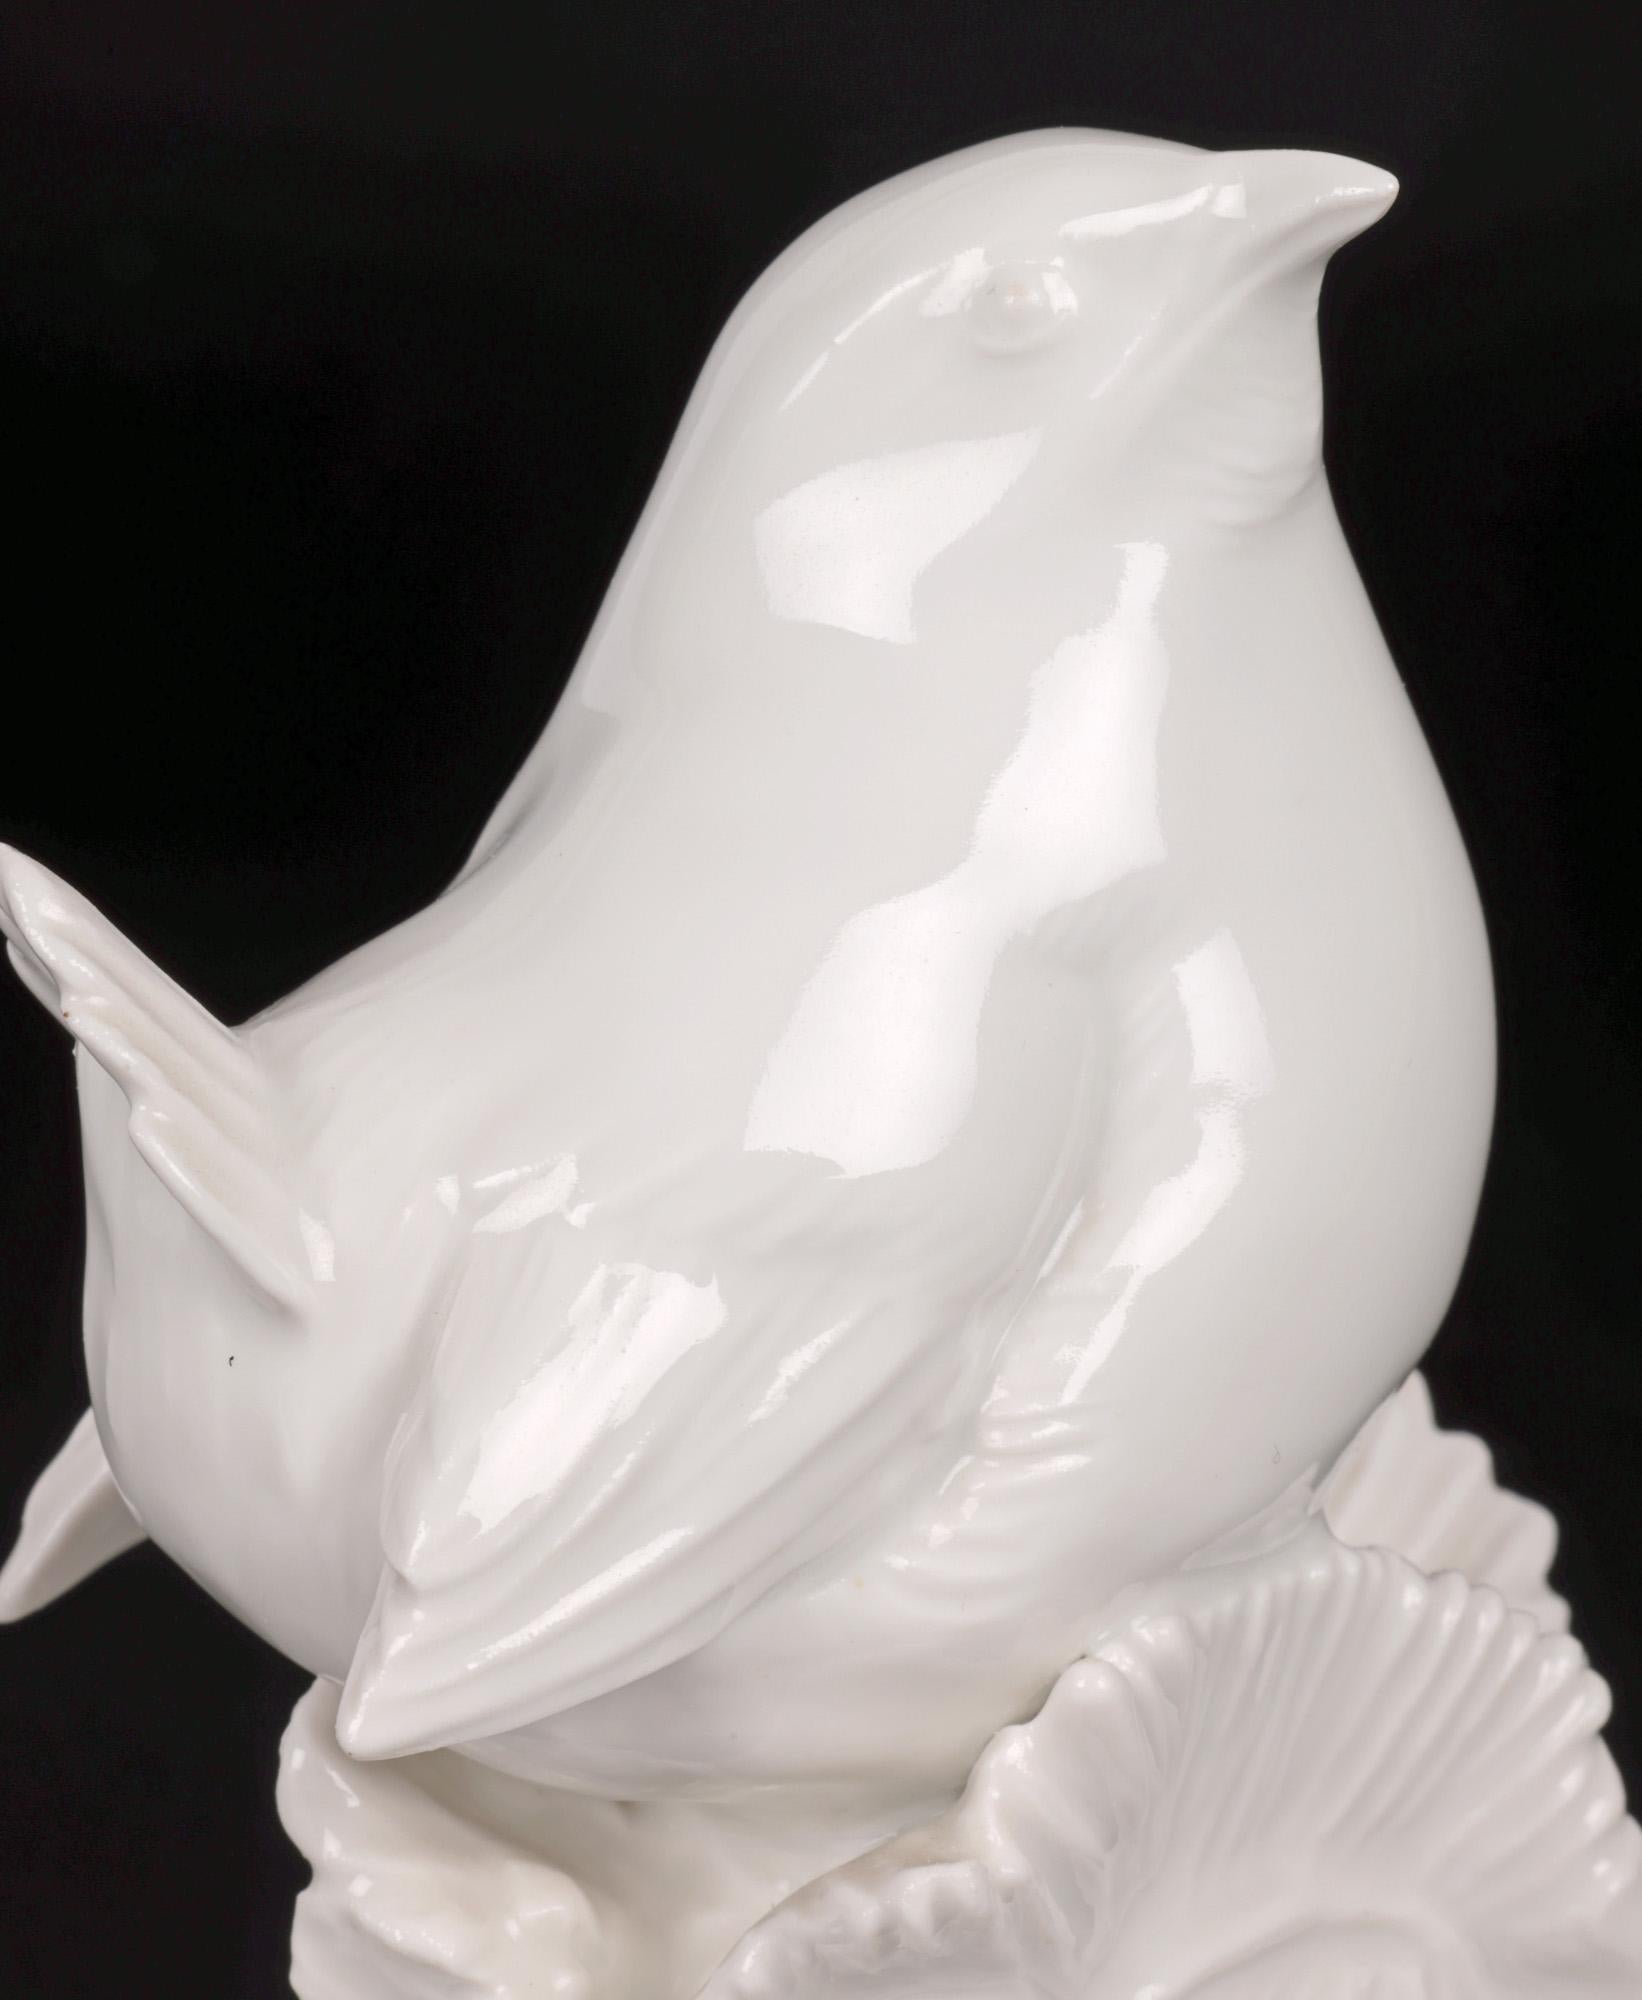 Dans le cadre d'une collection de figurines en blanc et blanc de chine, nous avons le plaisir de vous proposer cette belle figurine d'oiseau de jardin en porcelaine allemande du célèbre fabricant Meissen et datant du 20e siècle. La figurine de